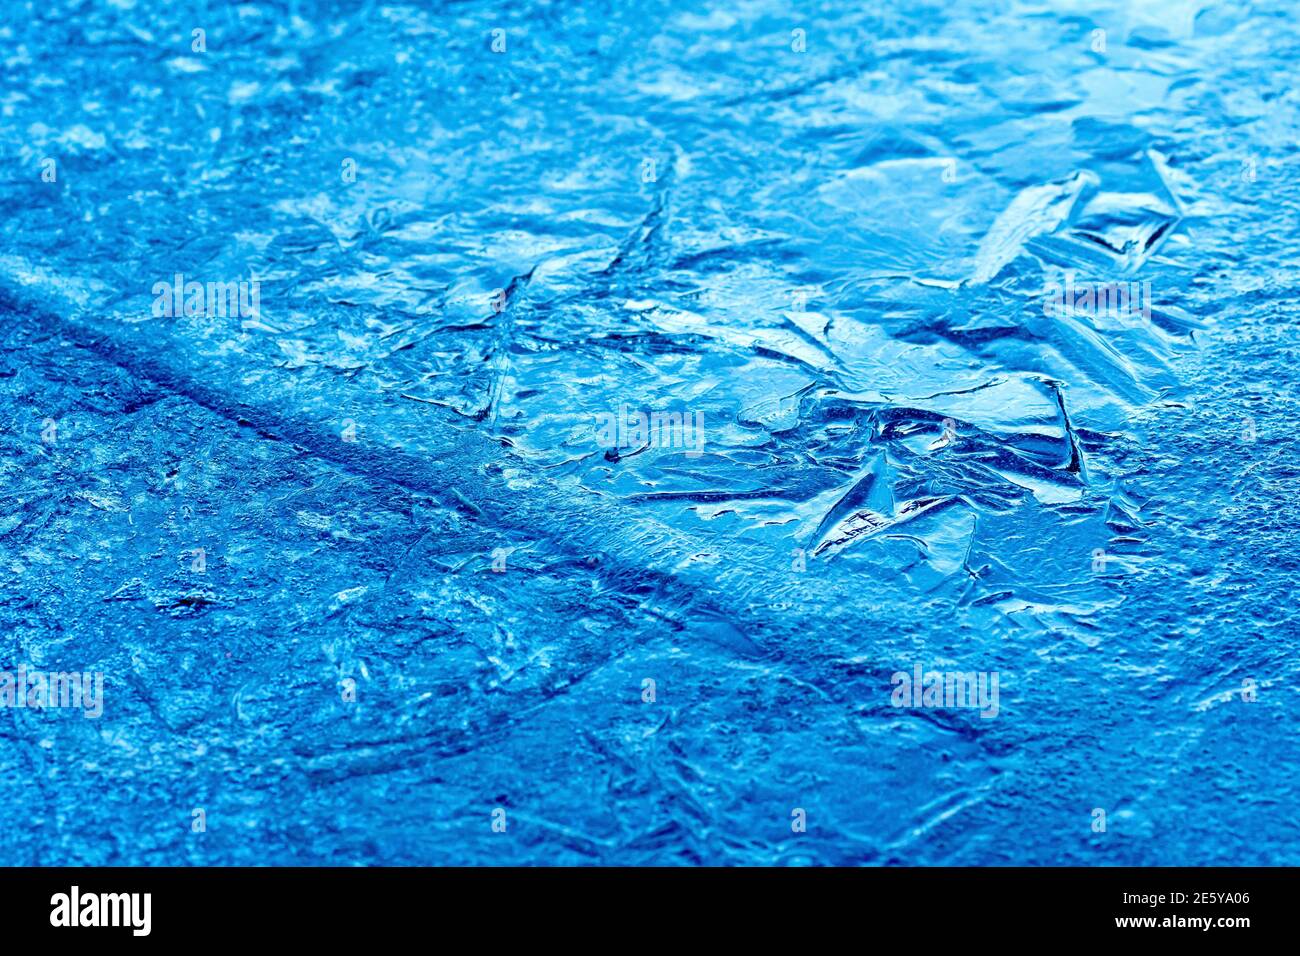 Gros plan montrant la surface fracturée d'une feuille de glace, où elle s'est partiellement décongelée et fissurée avant de la redégeler. Banque D'Images